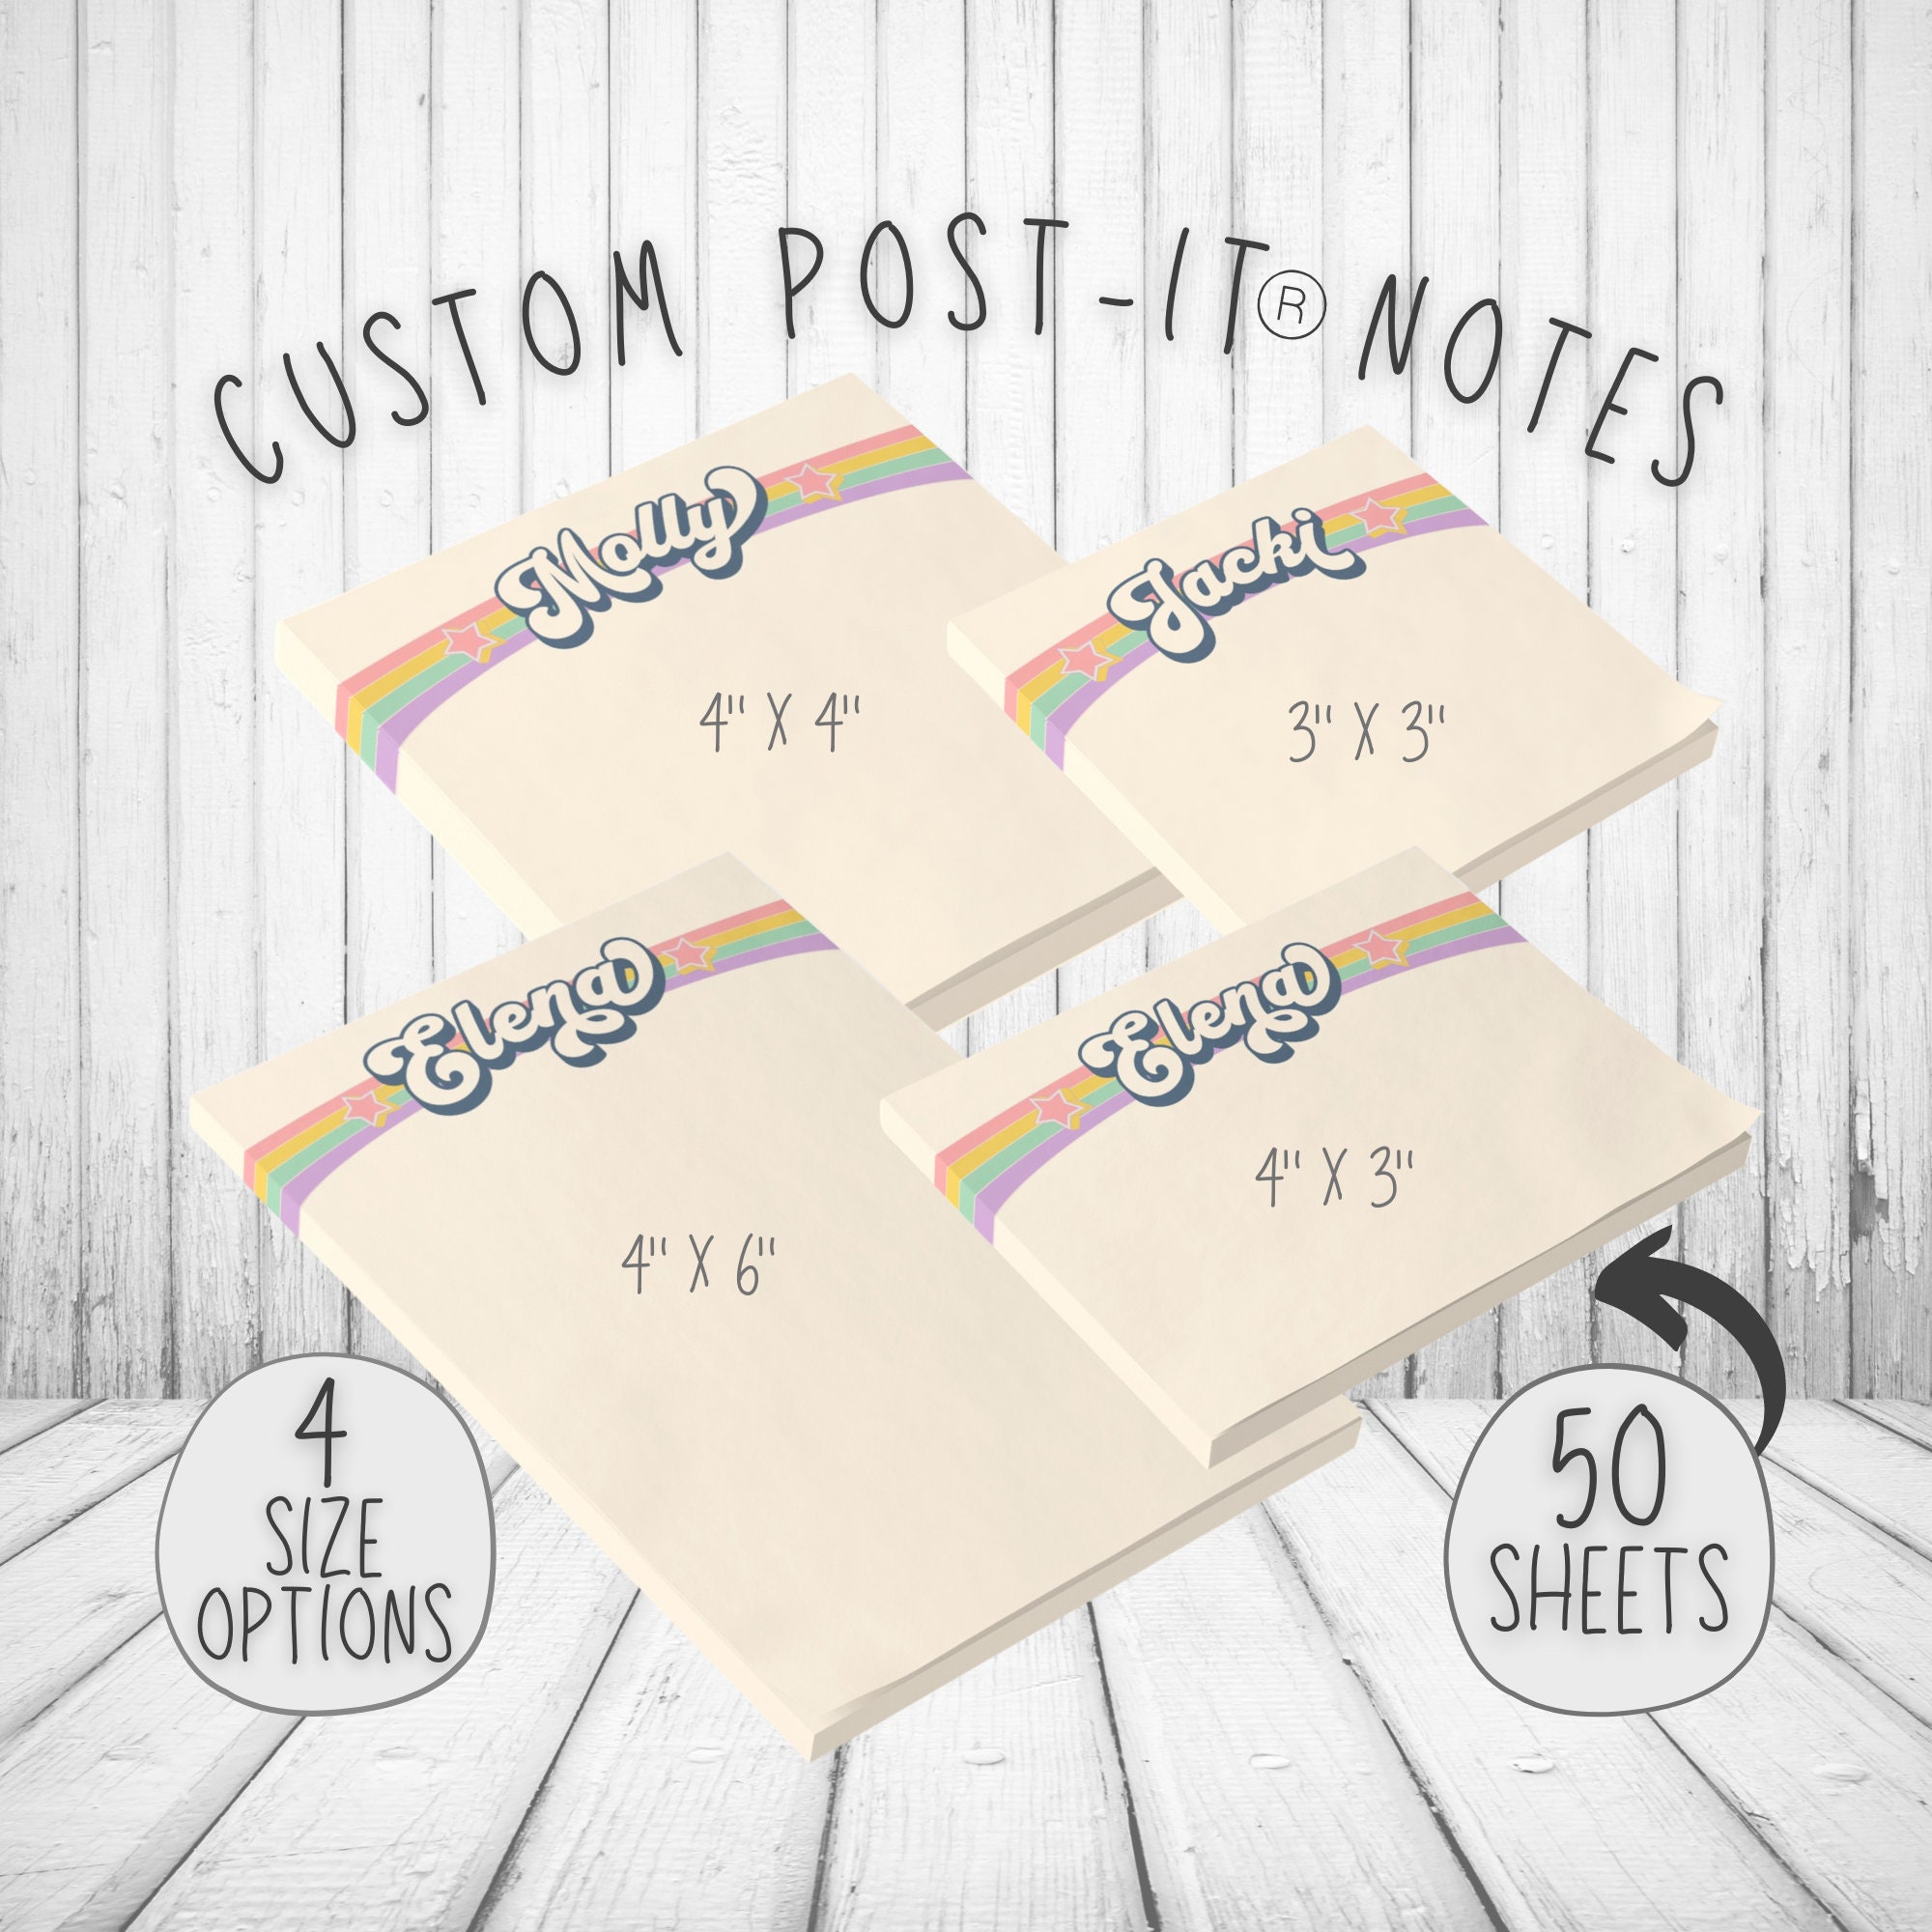 Pastel Post It Notes (6 colors)